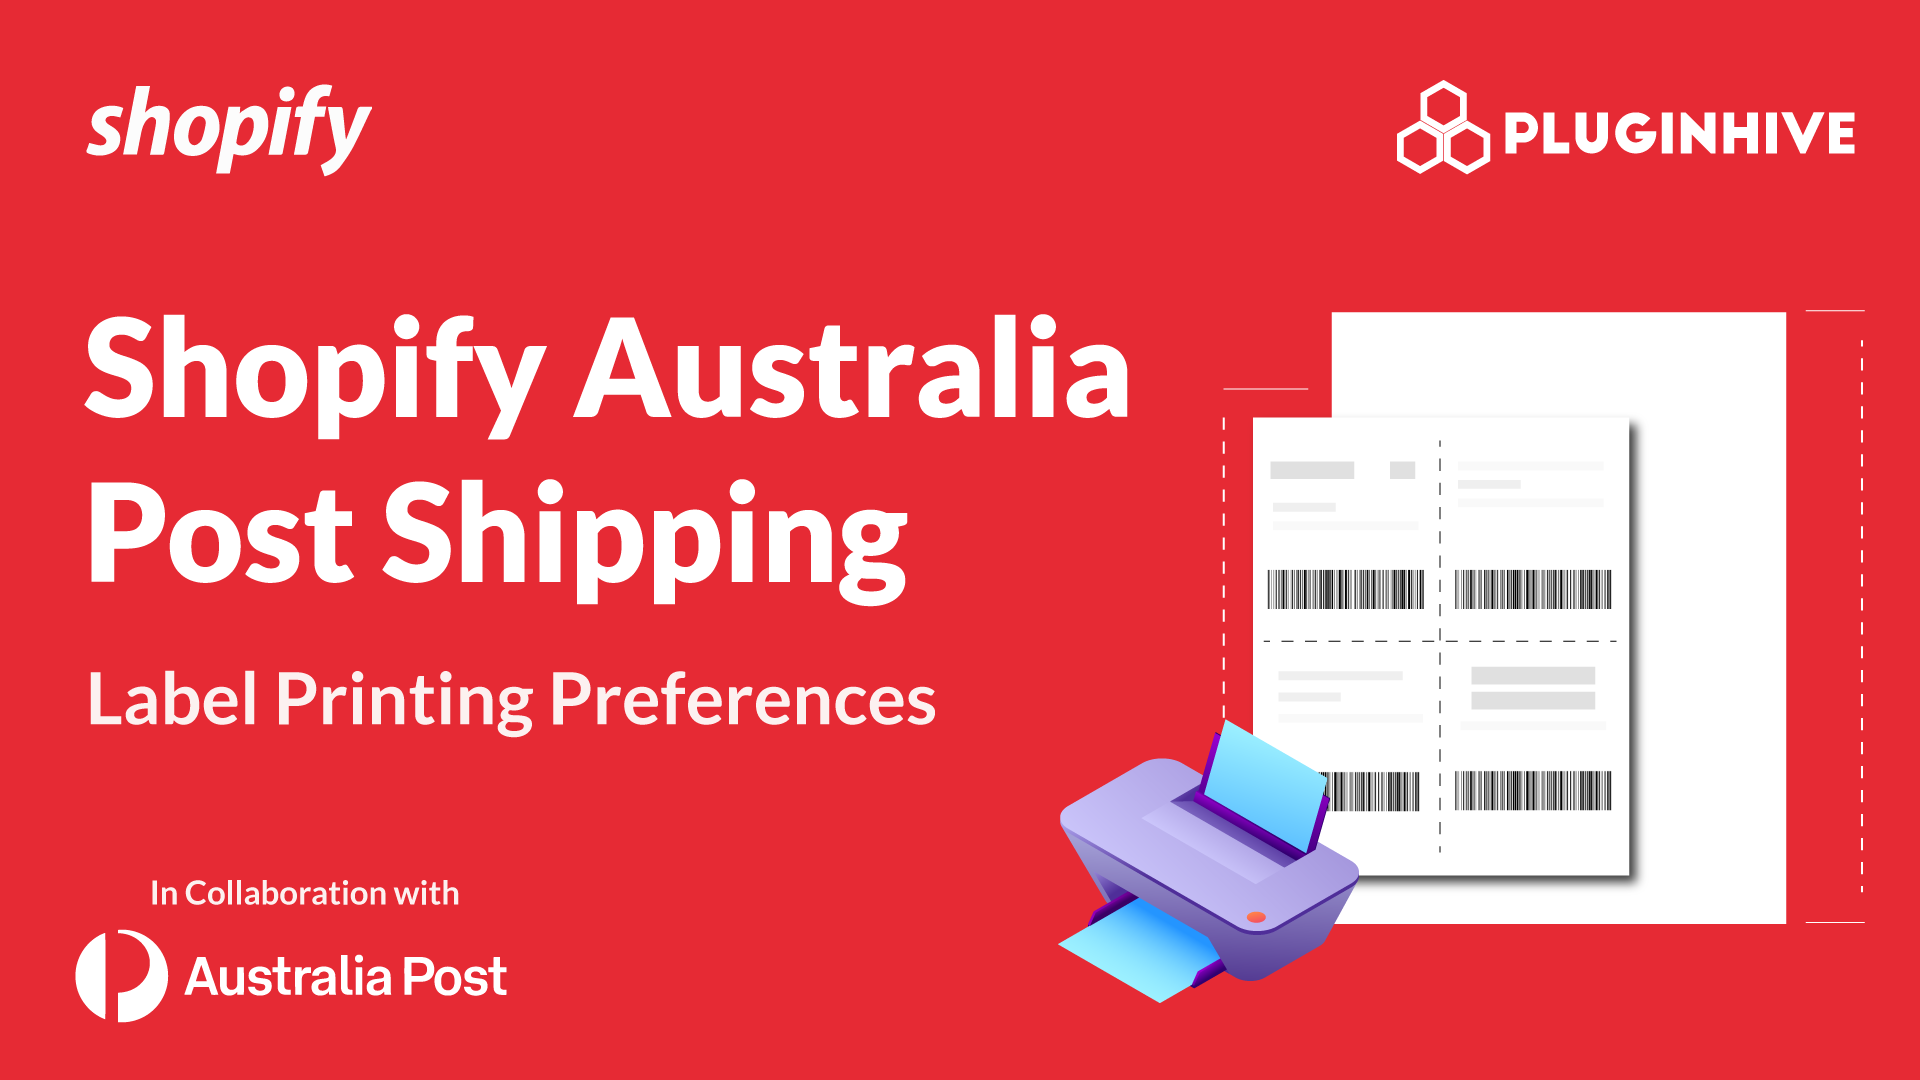 shopify_australia_post_label_print_preferences